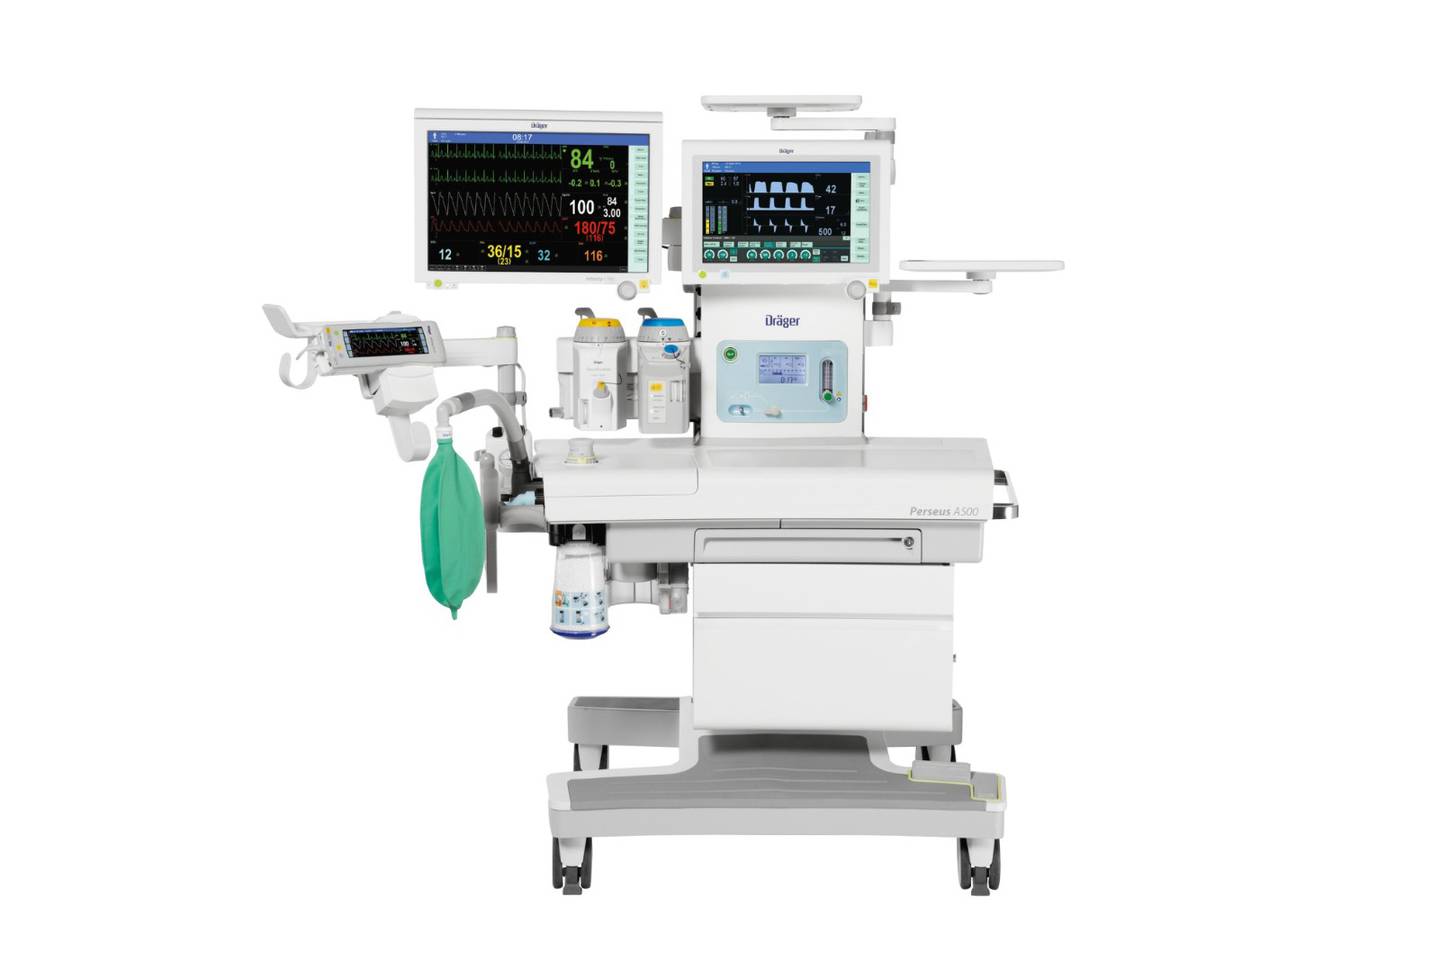 Los nuevos equipos de anestesia son marca Dräger, modelo Perseus A500 y, según la CCSS, permitirán impactar en las listas de espera de especialidades quirúrgicas. Tienen dos años de garantía para el mantenimiento preventivo y correctivo.